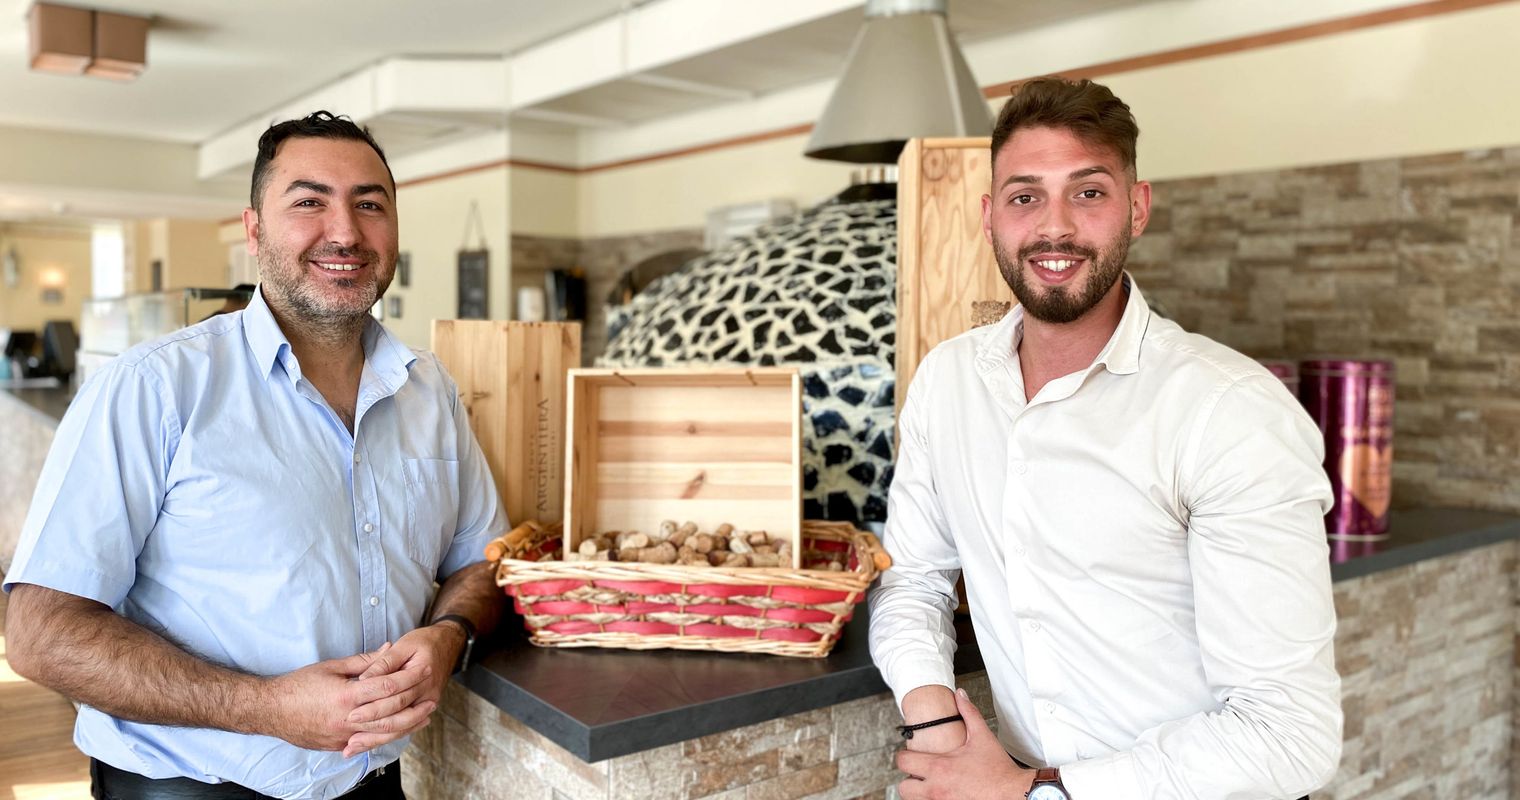 Luzerner Molini Pizzeria expandiert – mitten in der Coronakrise